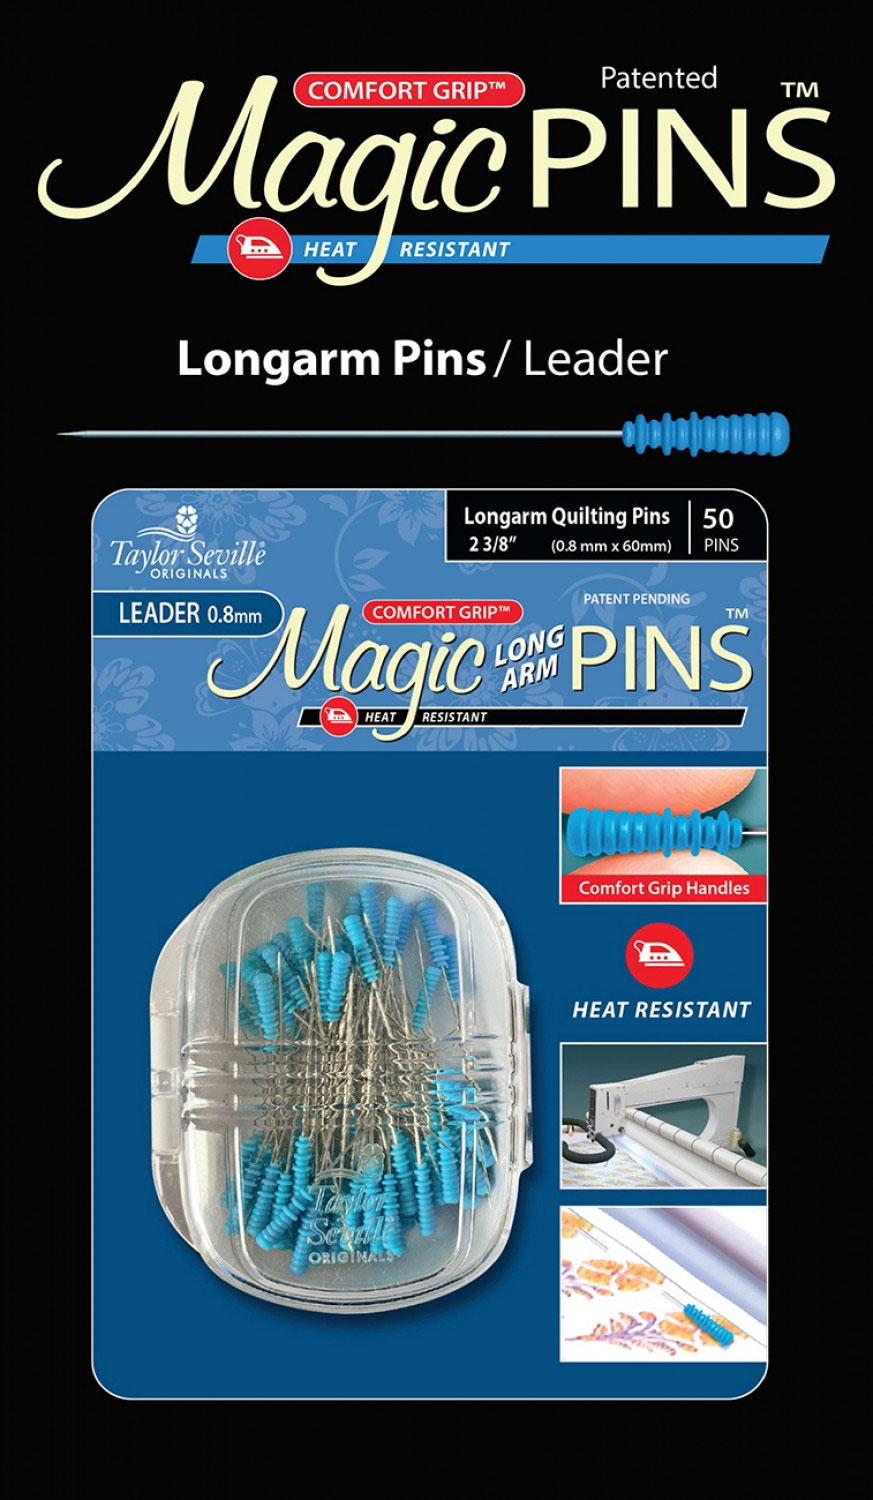 Magic Silk Pins™ 